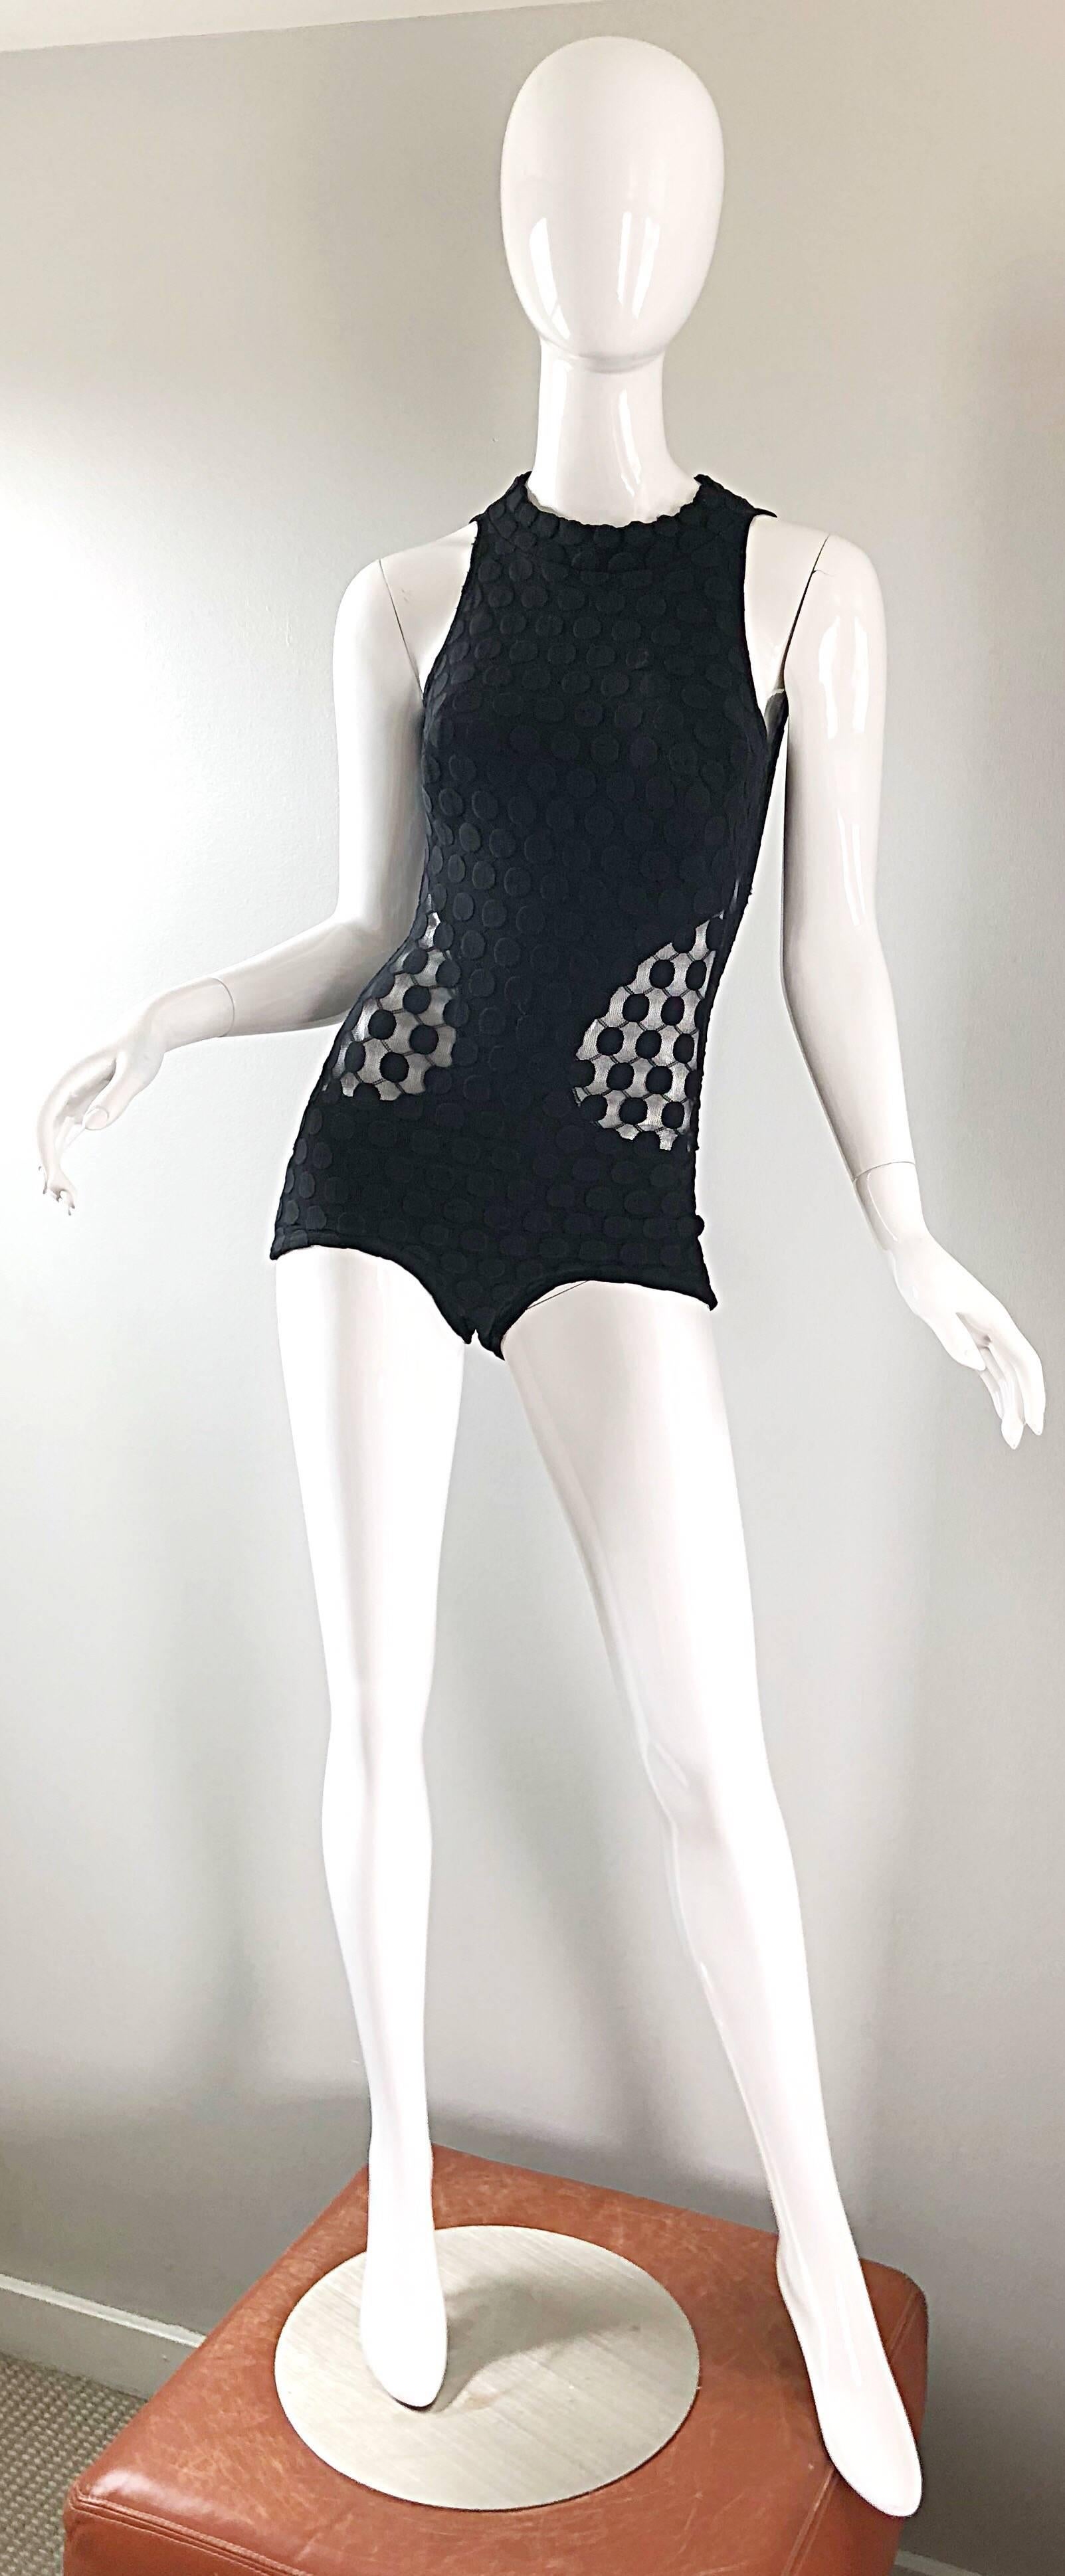 Sexy und seltener 1960er GOTTEX schwarzer einteiliger Badeanzug oder Bodysuit mit durchsichtigen Ausschnitten an den Seiten! Mit hohem Halsausschnitt und offenem Rücken. Schwarz auf schwarzem Tupfenmuster. Die halbdurchsichtigen Ausschnitte an der